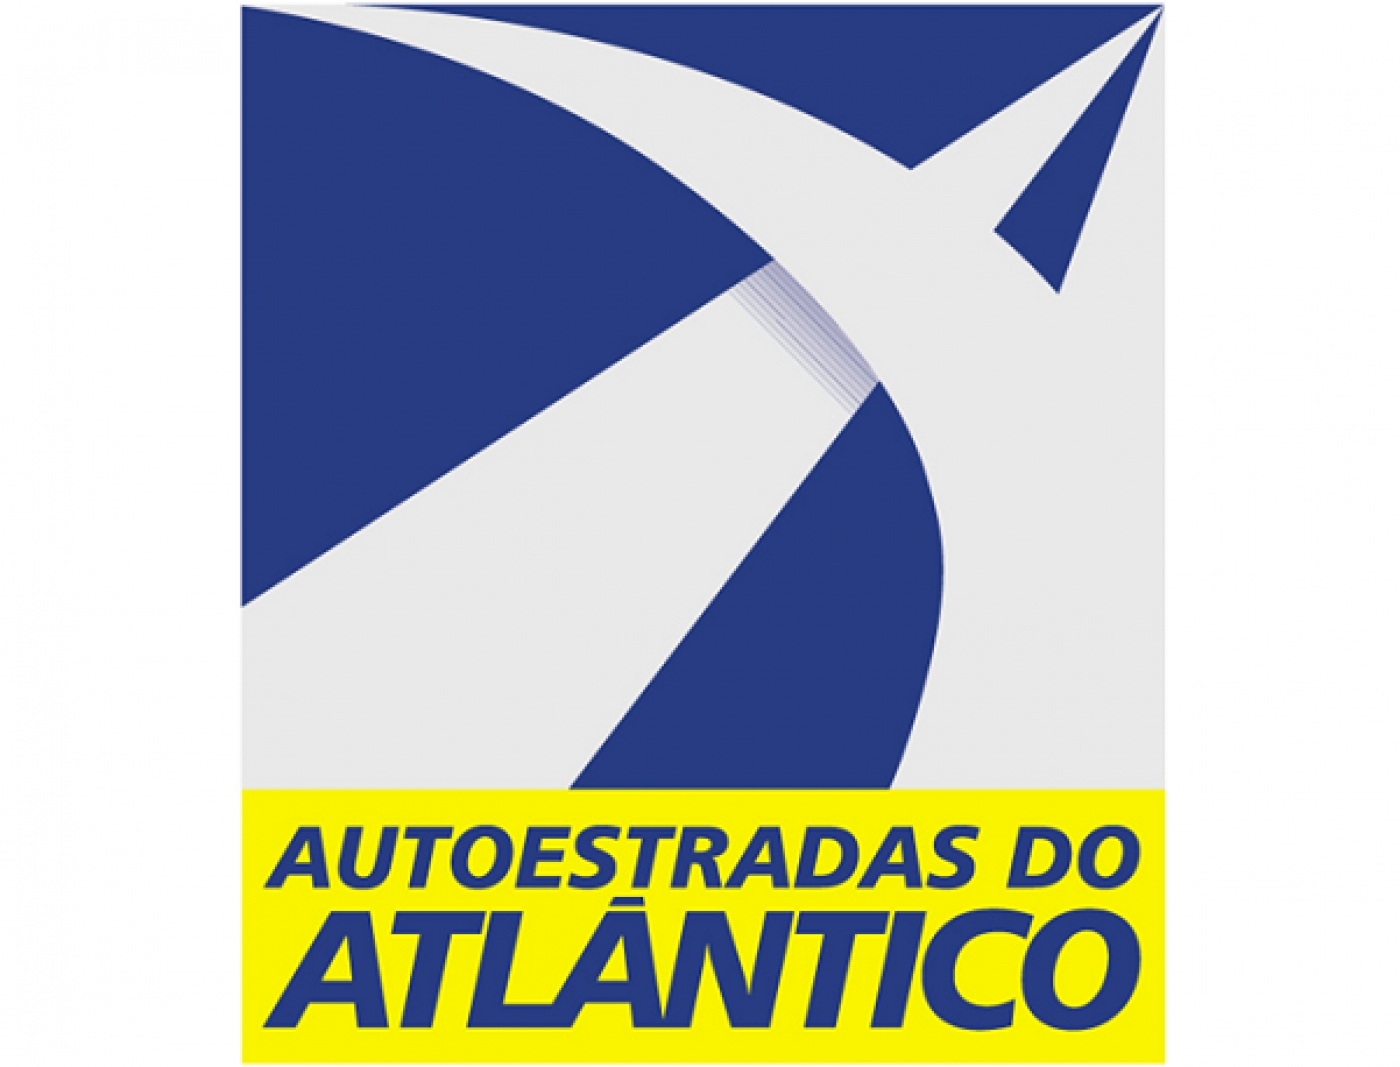 Testemunho | Auto-Estradas do Atlântico - Qualidade, a base da nossa atuação